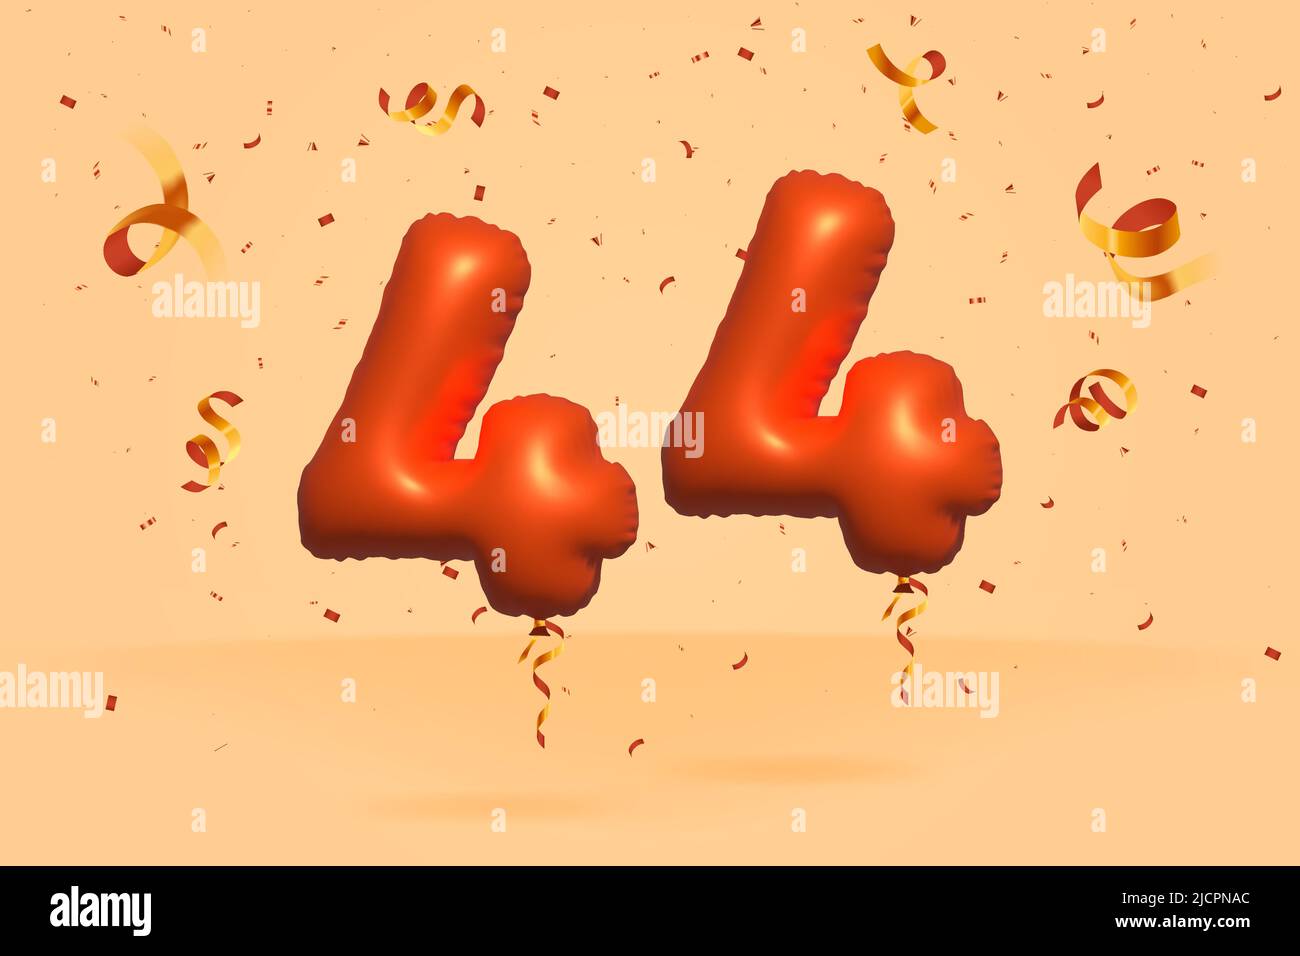 3D numero 44 Vendita di sconto promozione fatta di realistic confetti foglio 3D Orange elio palloncino vettore. Illustrazione per la vendita di poster, banner pubblicitari, Illustrazione Vettoriale